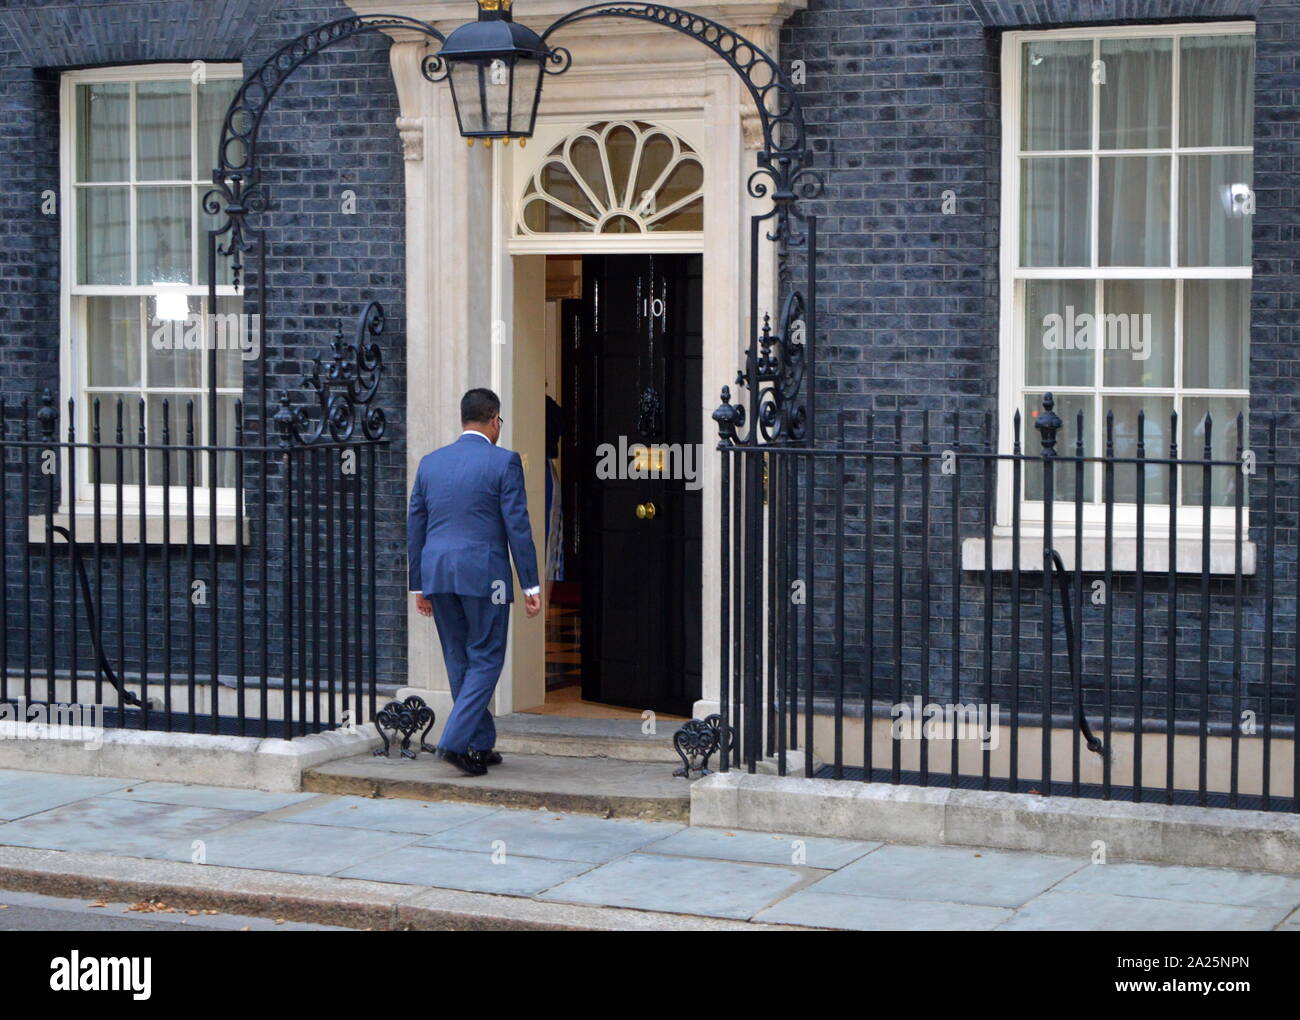 Alok sharma; político del partido conservador británico, llega al número 10 de Downing Street para ser nombrado secretario de estado para el desarrollo internacional conforme a Boris Johnson. Foto de stock